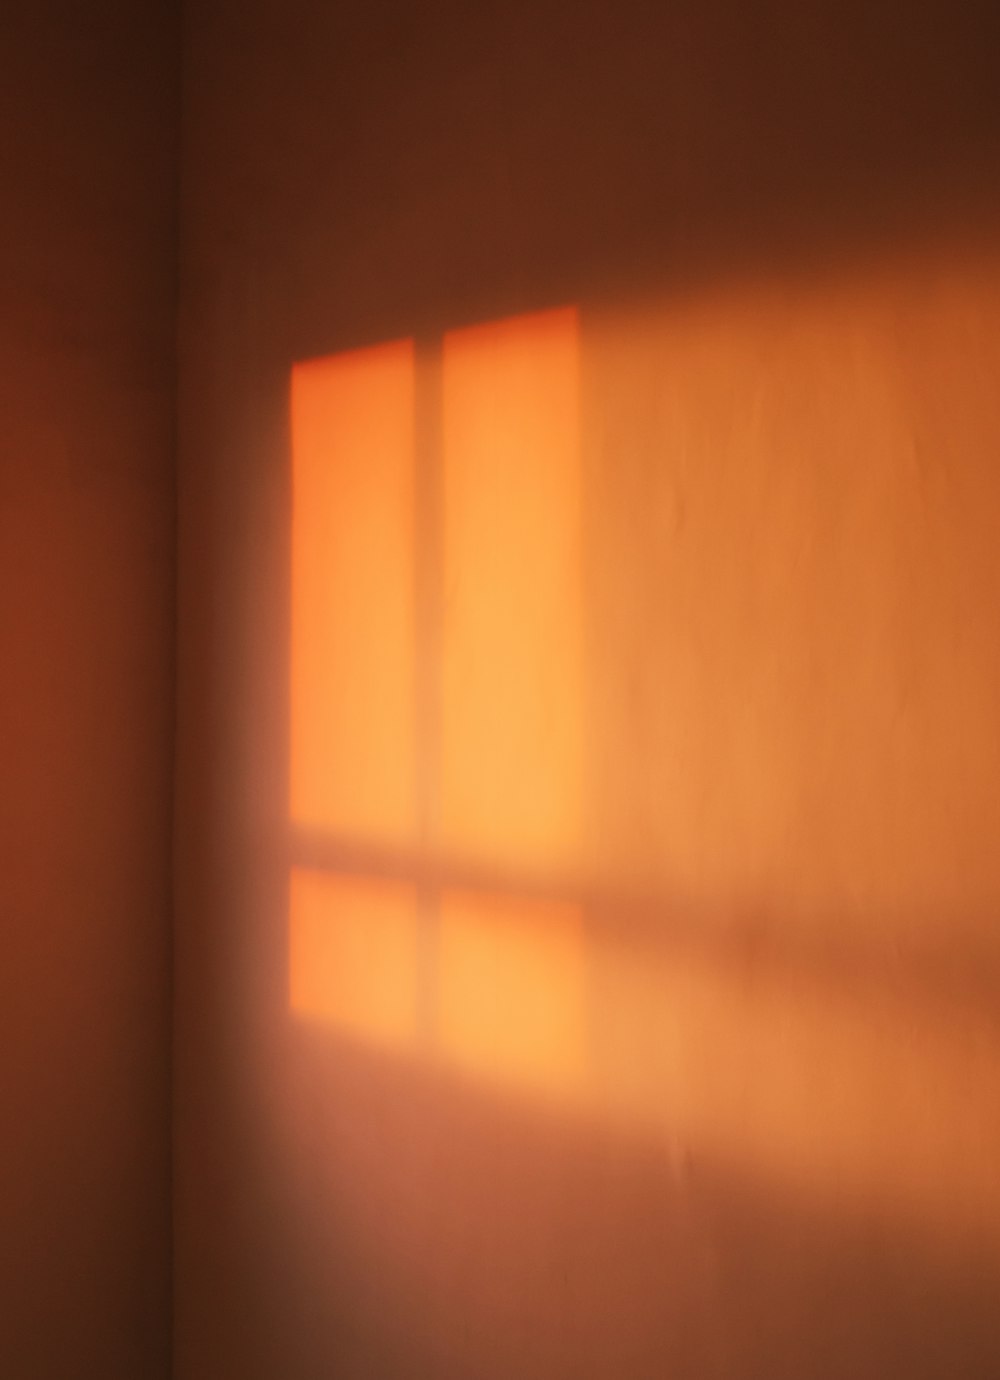 Una stanza con una finestra e una luce che entra dalla finestra foto –  Ombra della finestra Immagine gratuita su Unsplash